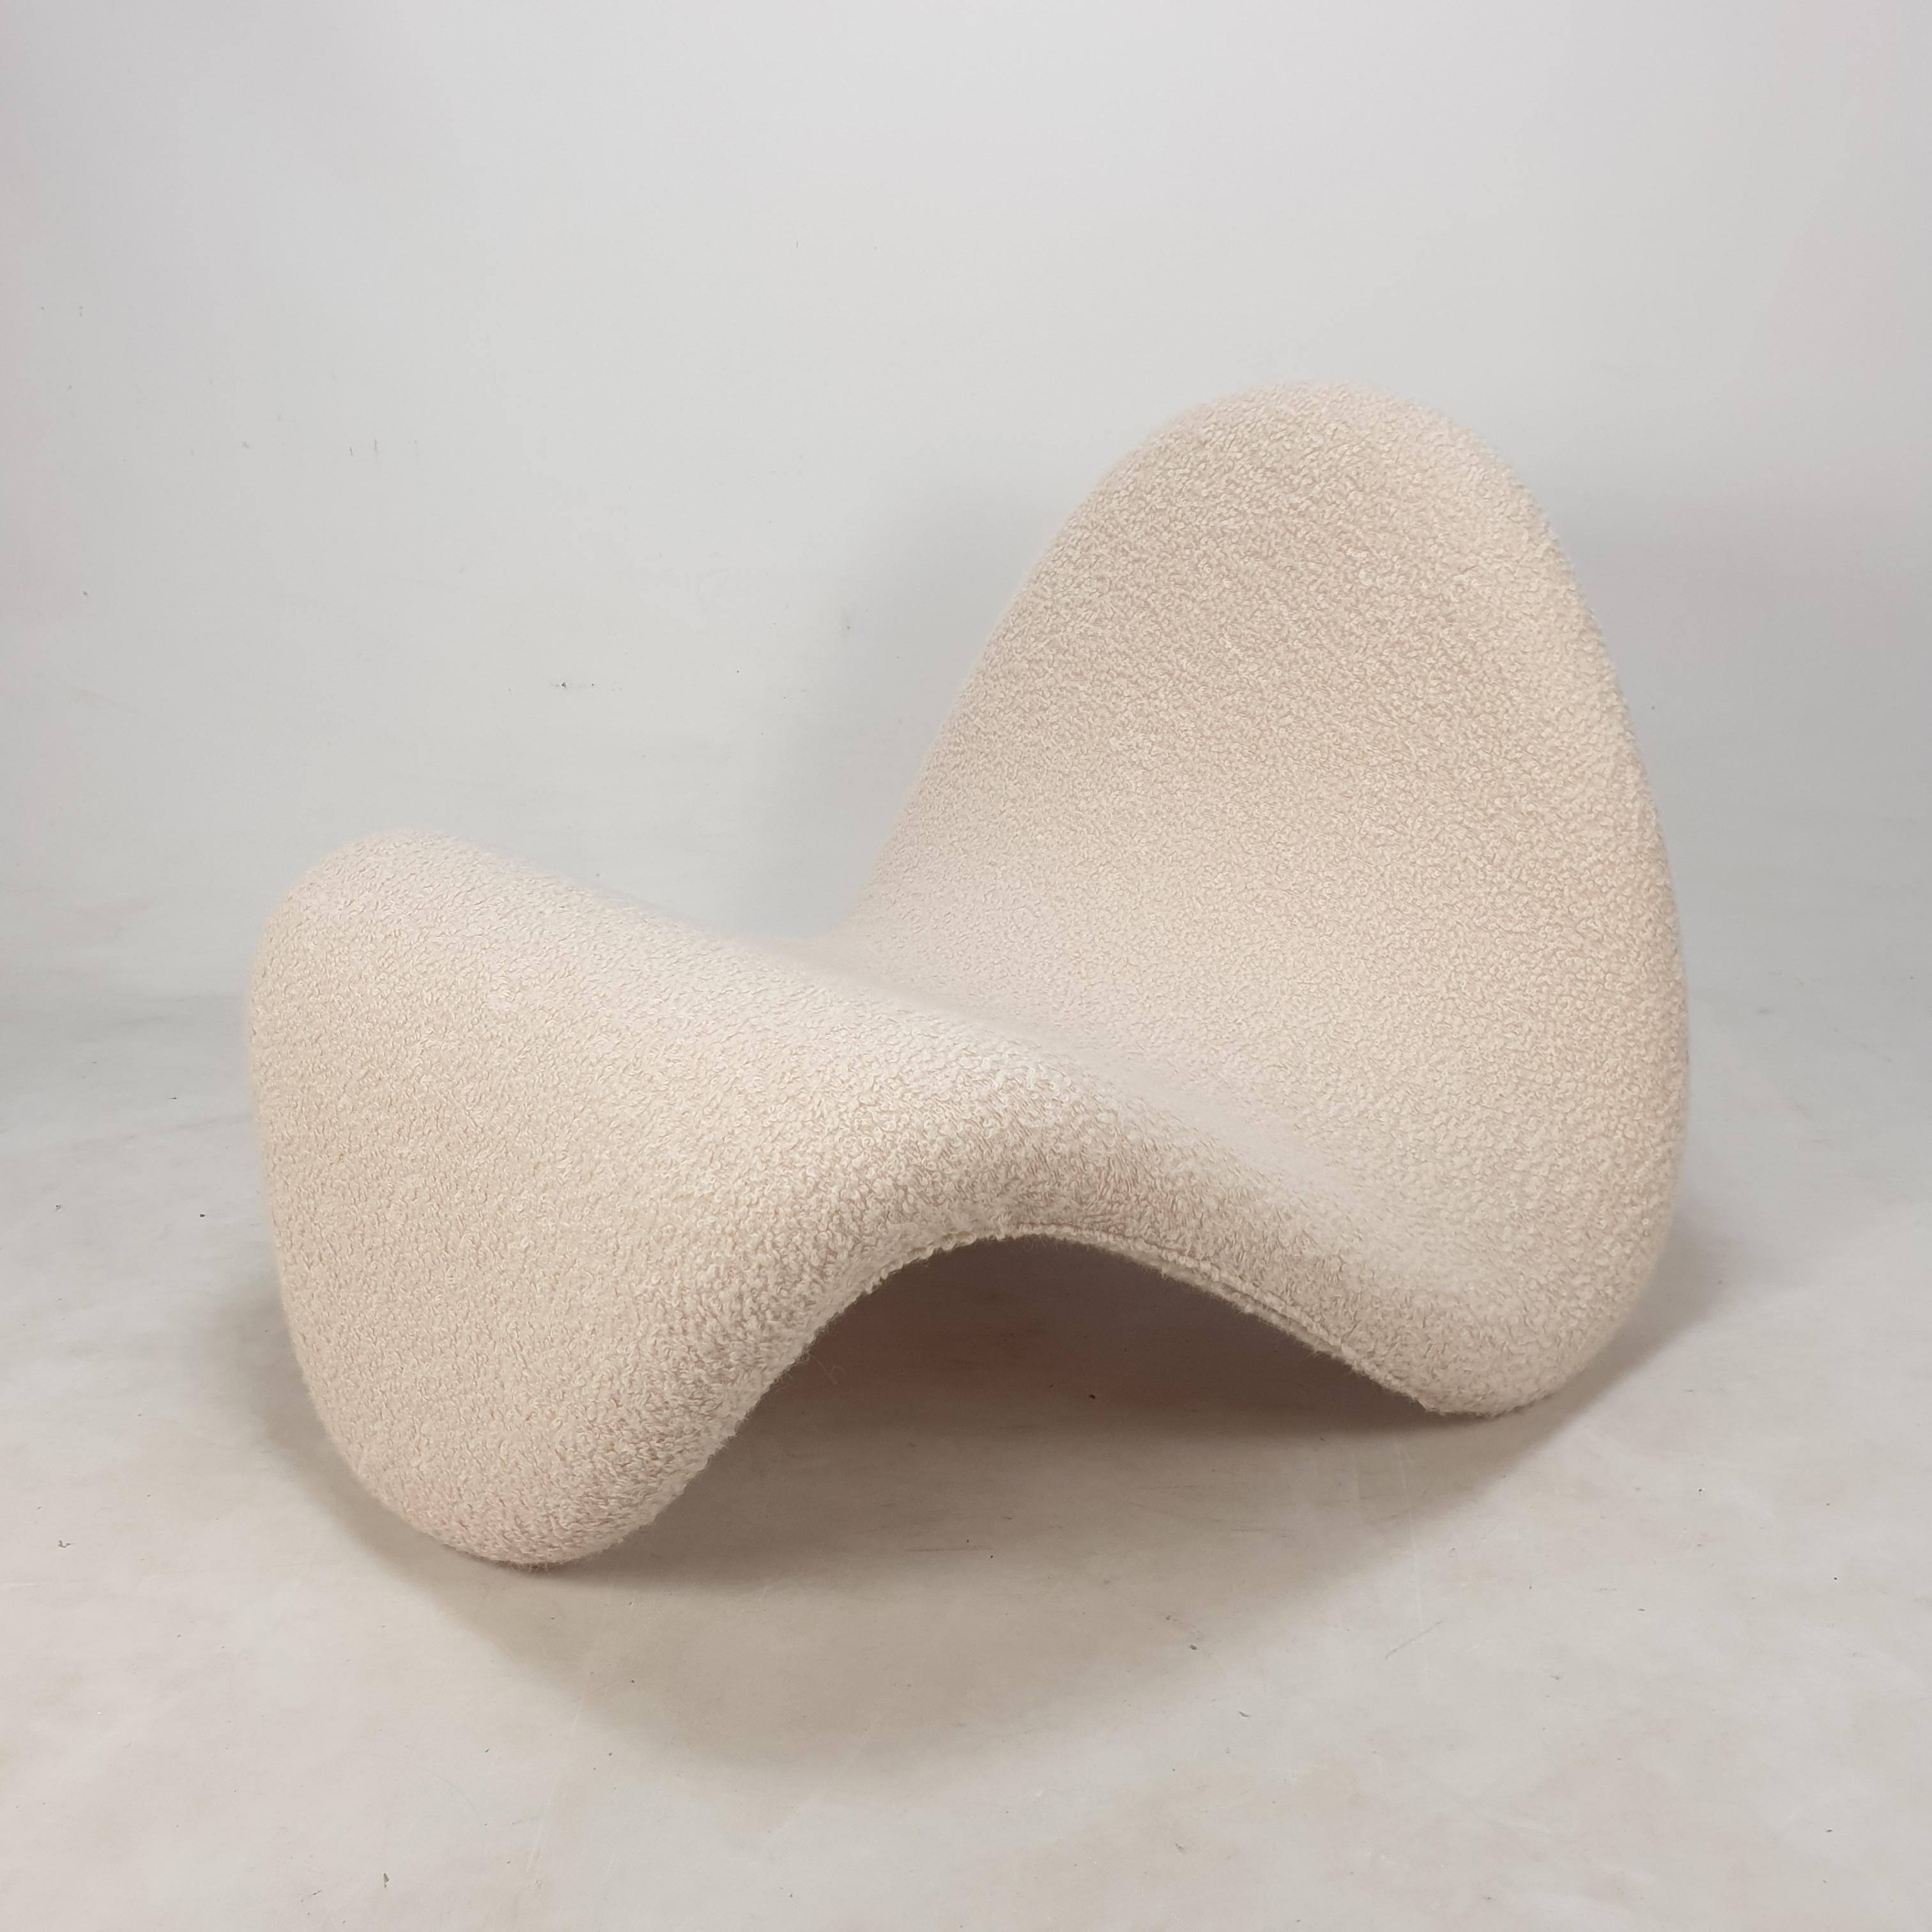 Erstaunlicher und sehr bequemer Tongue Stuhl, entworfen von dem französischen Designer Pierre Paulin in den 60er Jahren und hergestellt von Artifort. 

Dieser schöne und originelle Stuhl wurde von einem französischen Pierre Paulin-Spezialisten